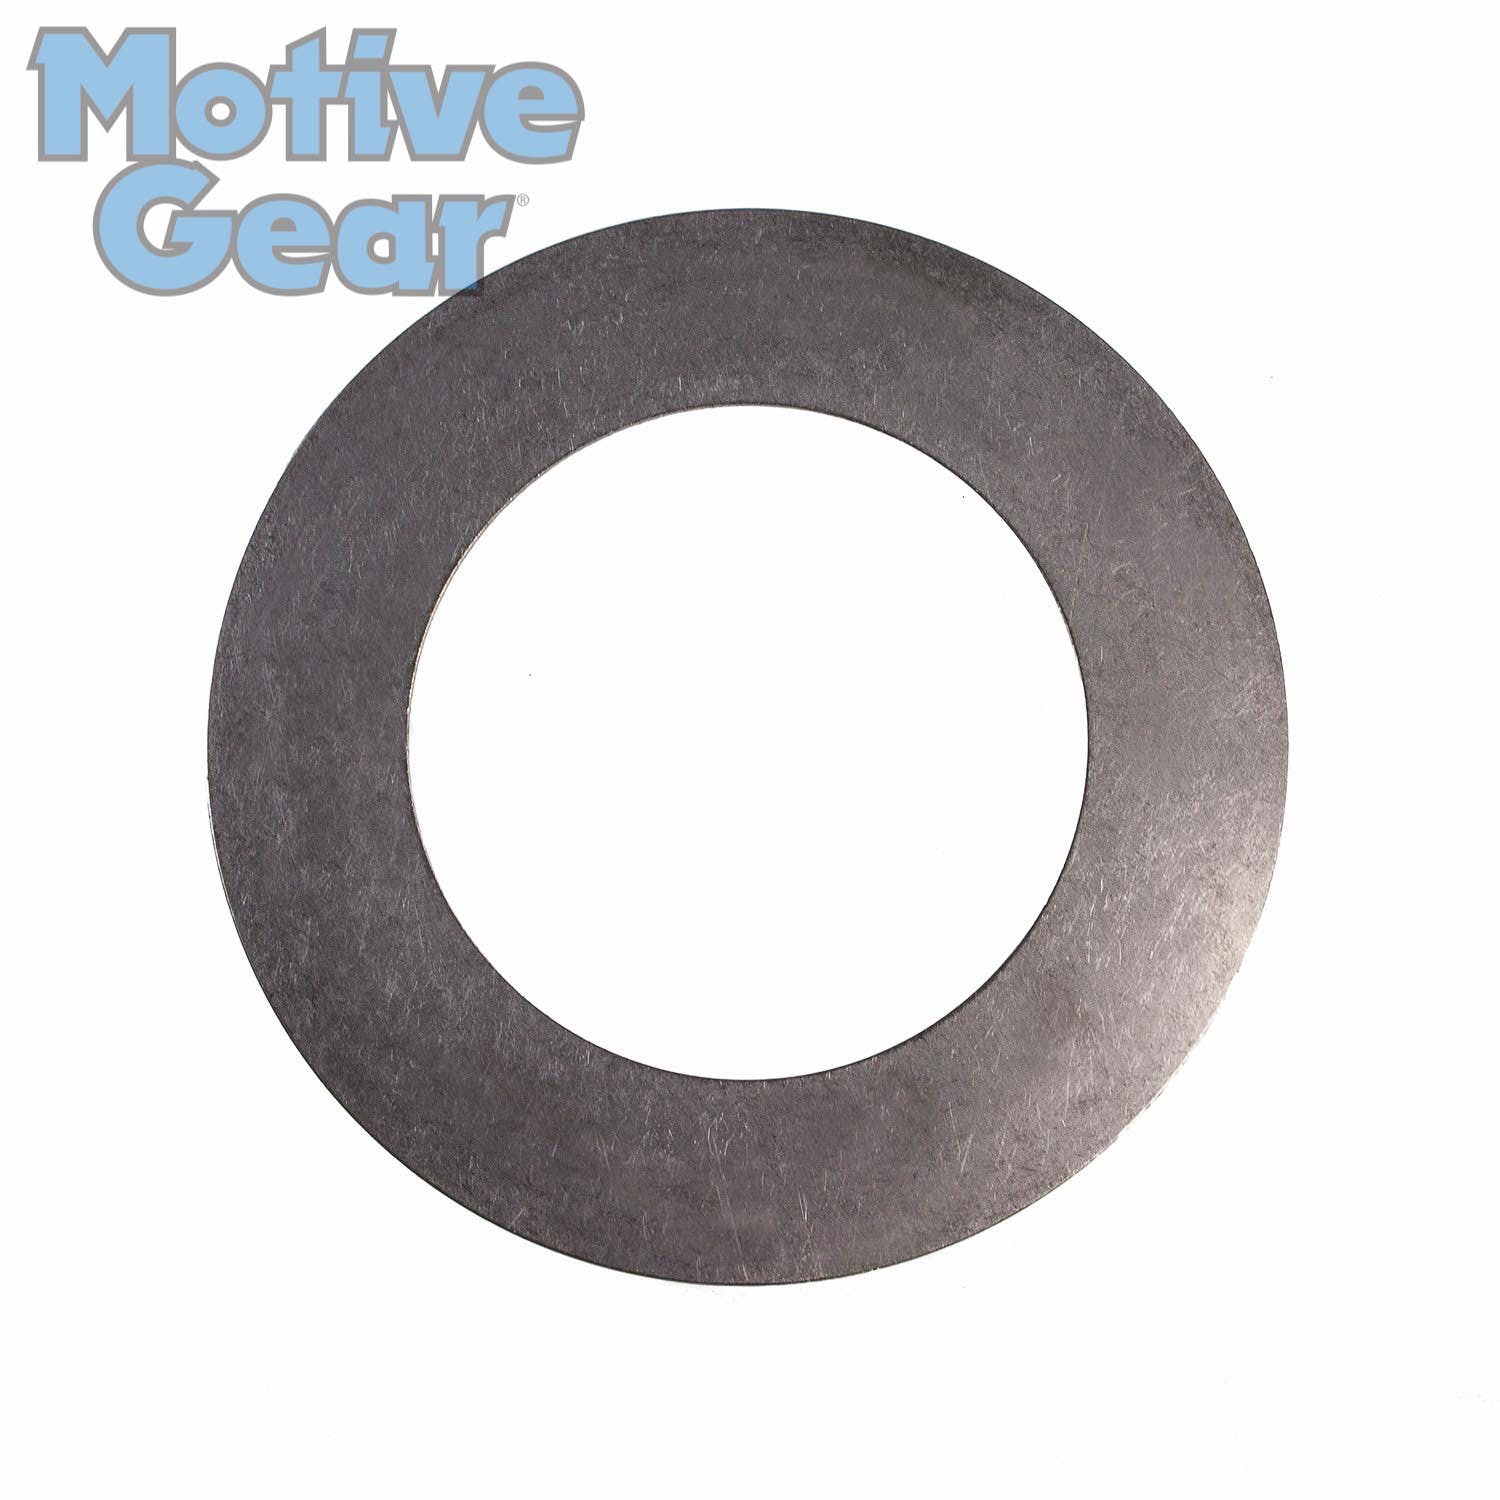 Motive Gear 12337937 Gear Washer